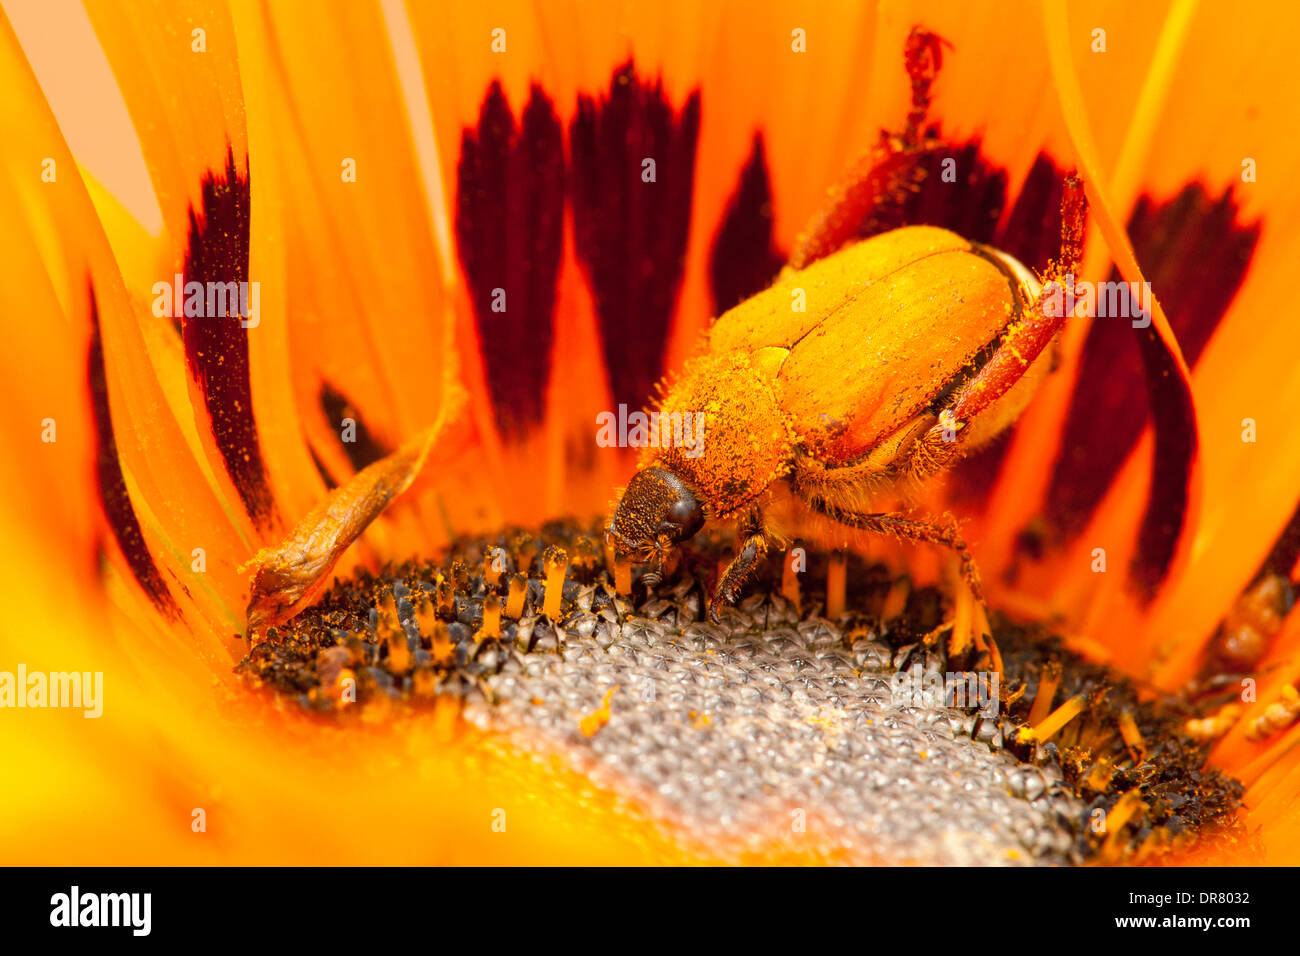 Orange-coloured beetle on an orange Gazania flower, Namaqualand, South Africa Stock Photo